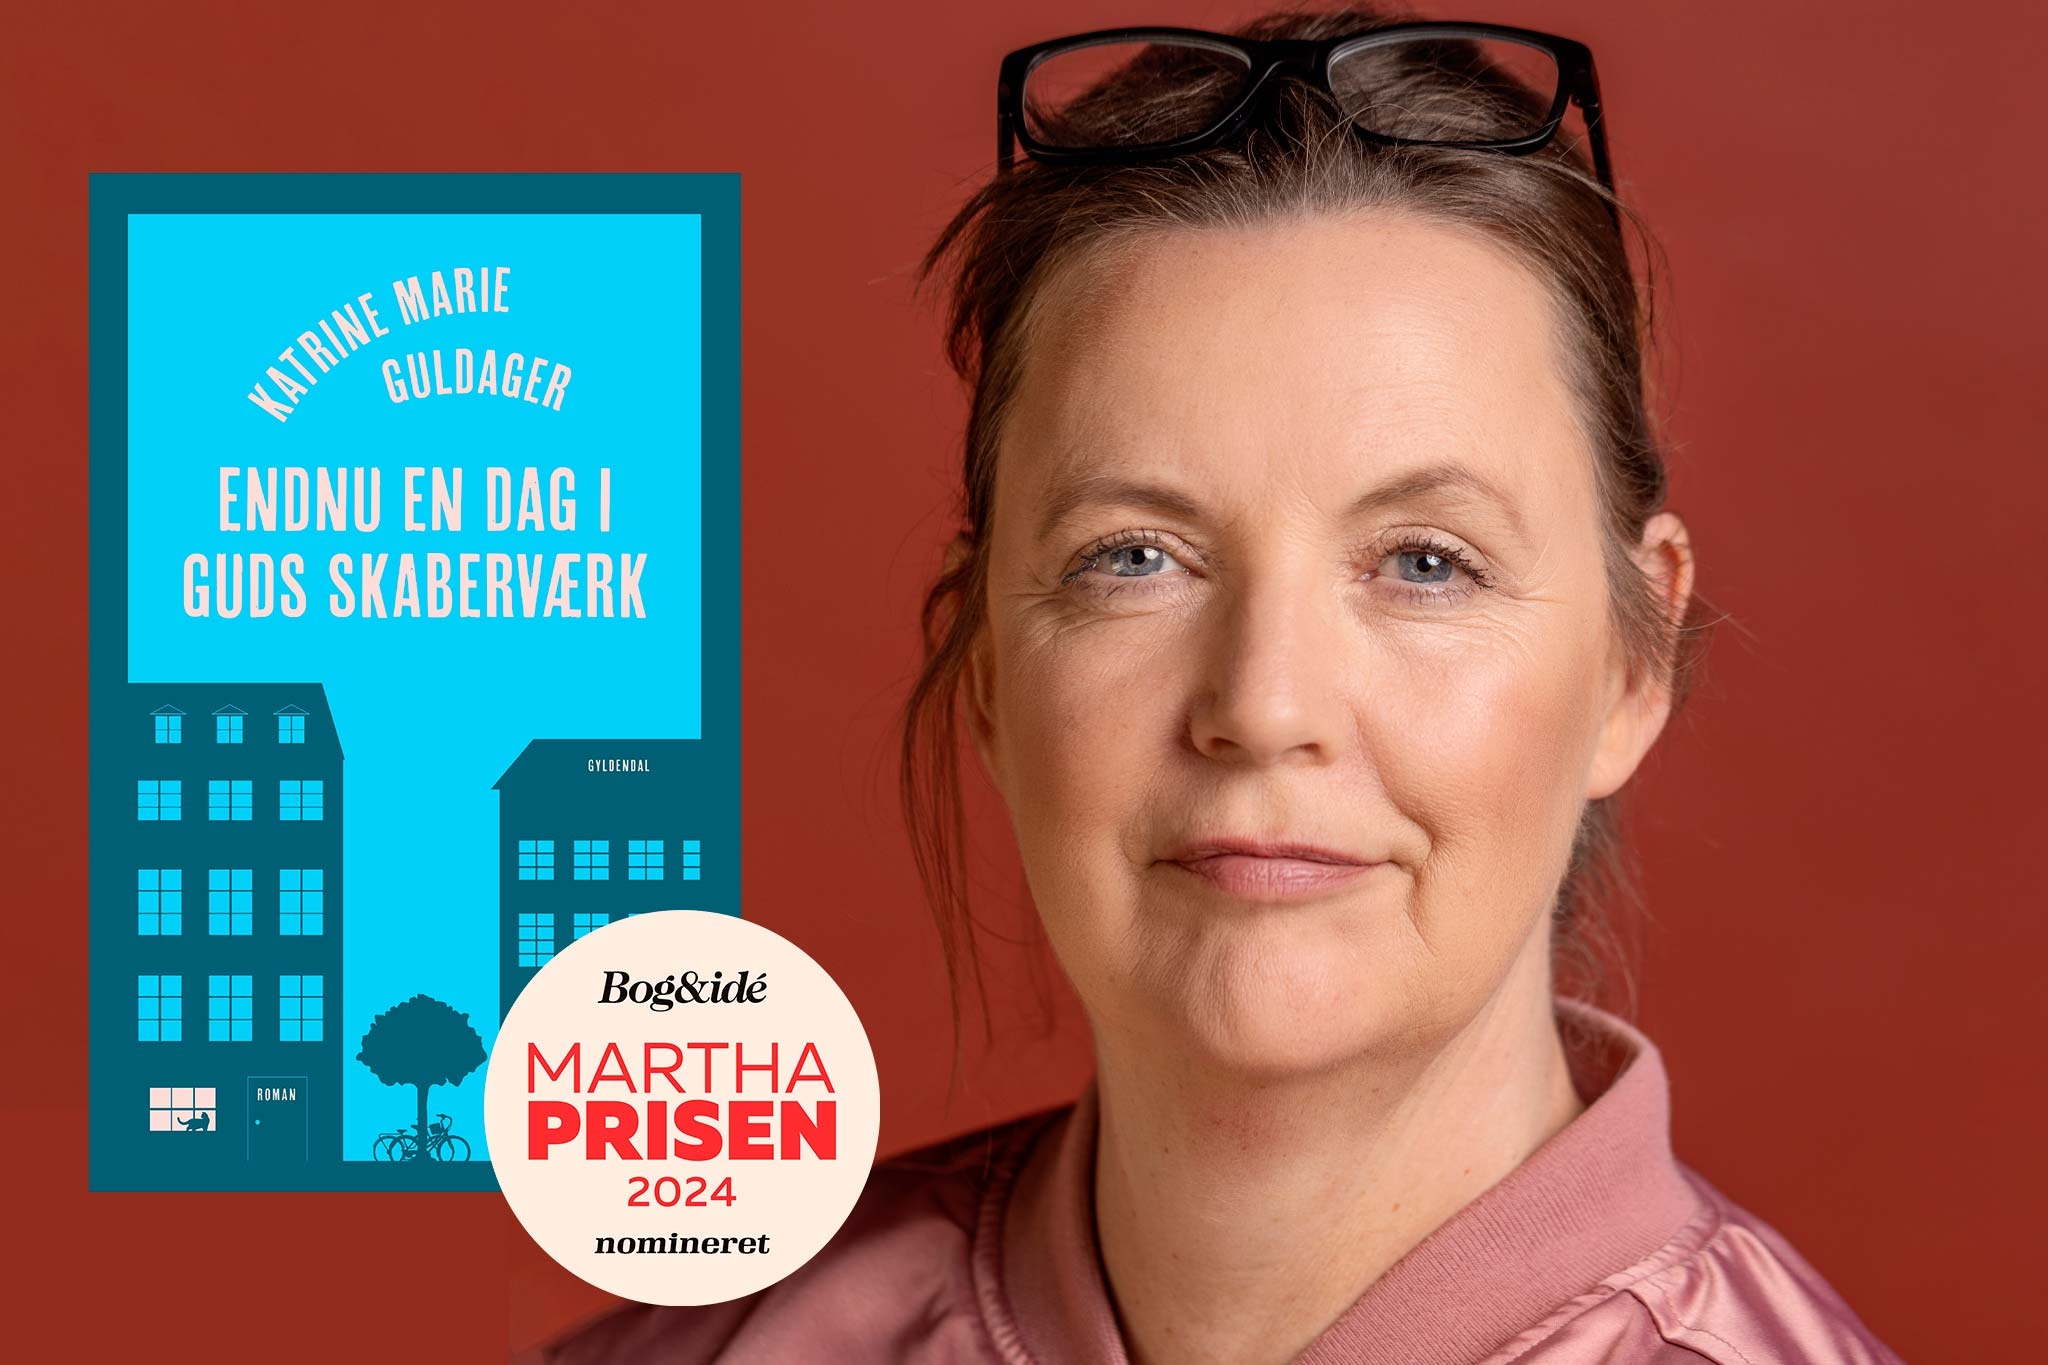 Endnu en dag i Guds skaberværk af Katrine Marie Guldager nomineret til MARTHA prisen 2024